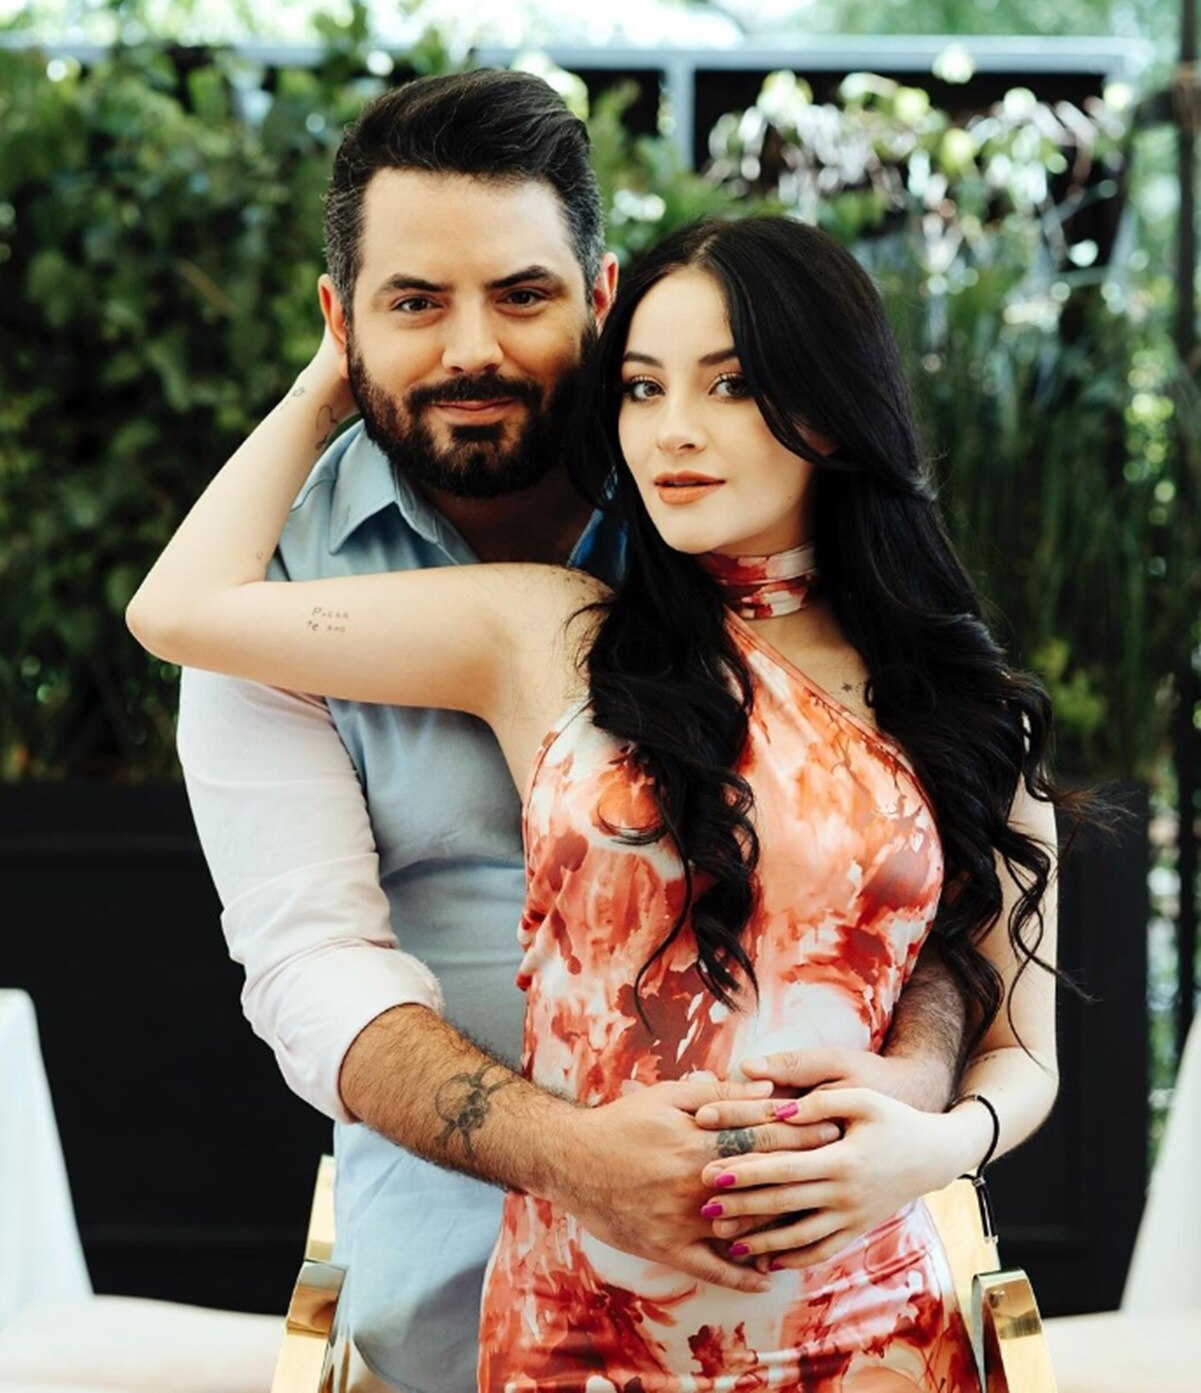 José Eduardo y Paola Dalay nombrarán a su primera hija como Tessa.
<p>Foto: Instagram